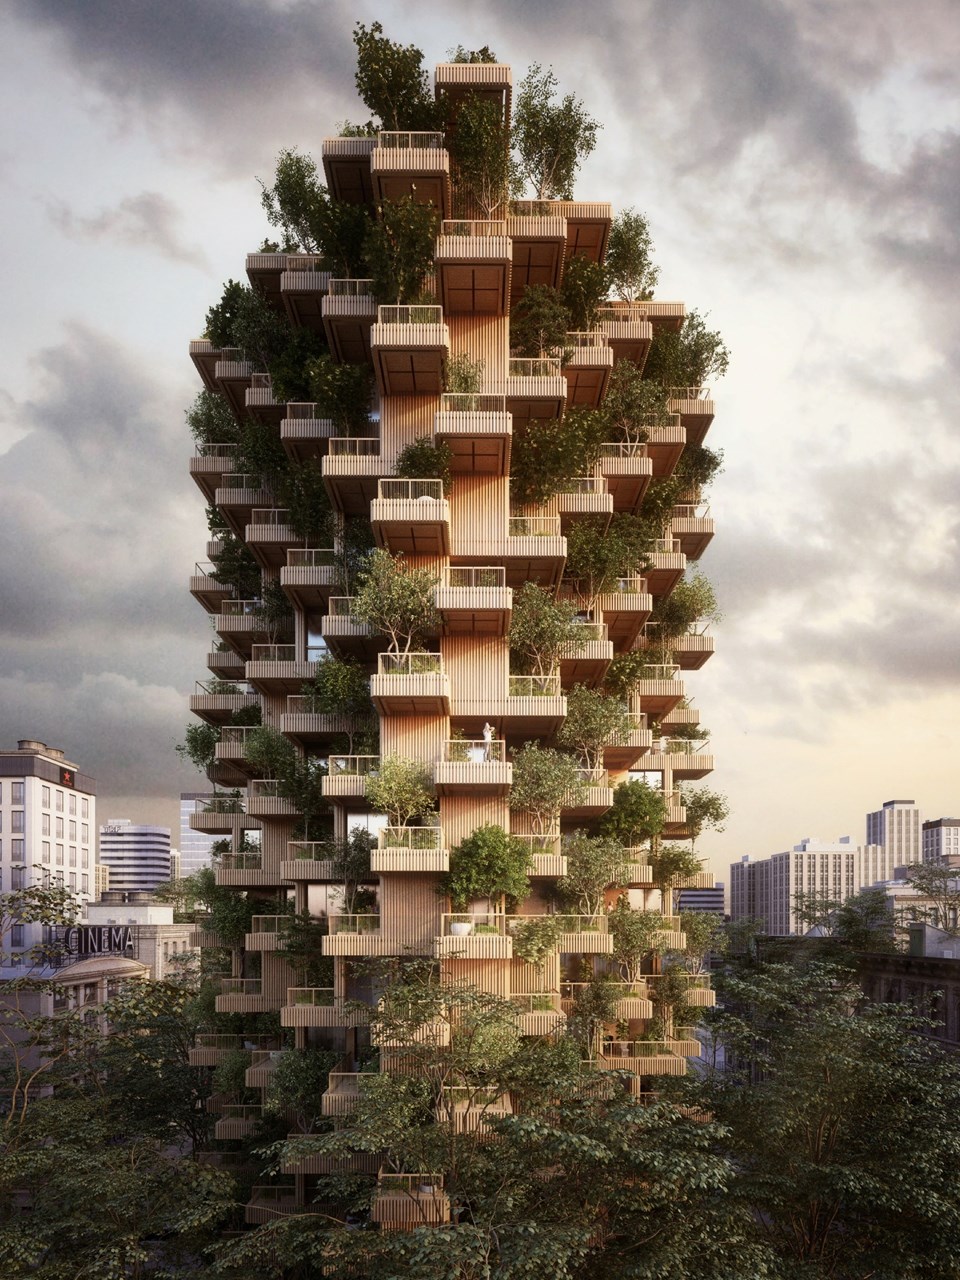 Çevreci binalar ve daha yeşil kentler için 'ağacın izinde' mimari yapılaşma - 2